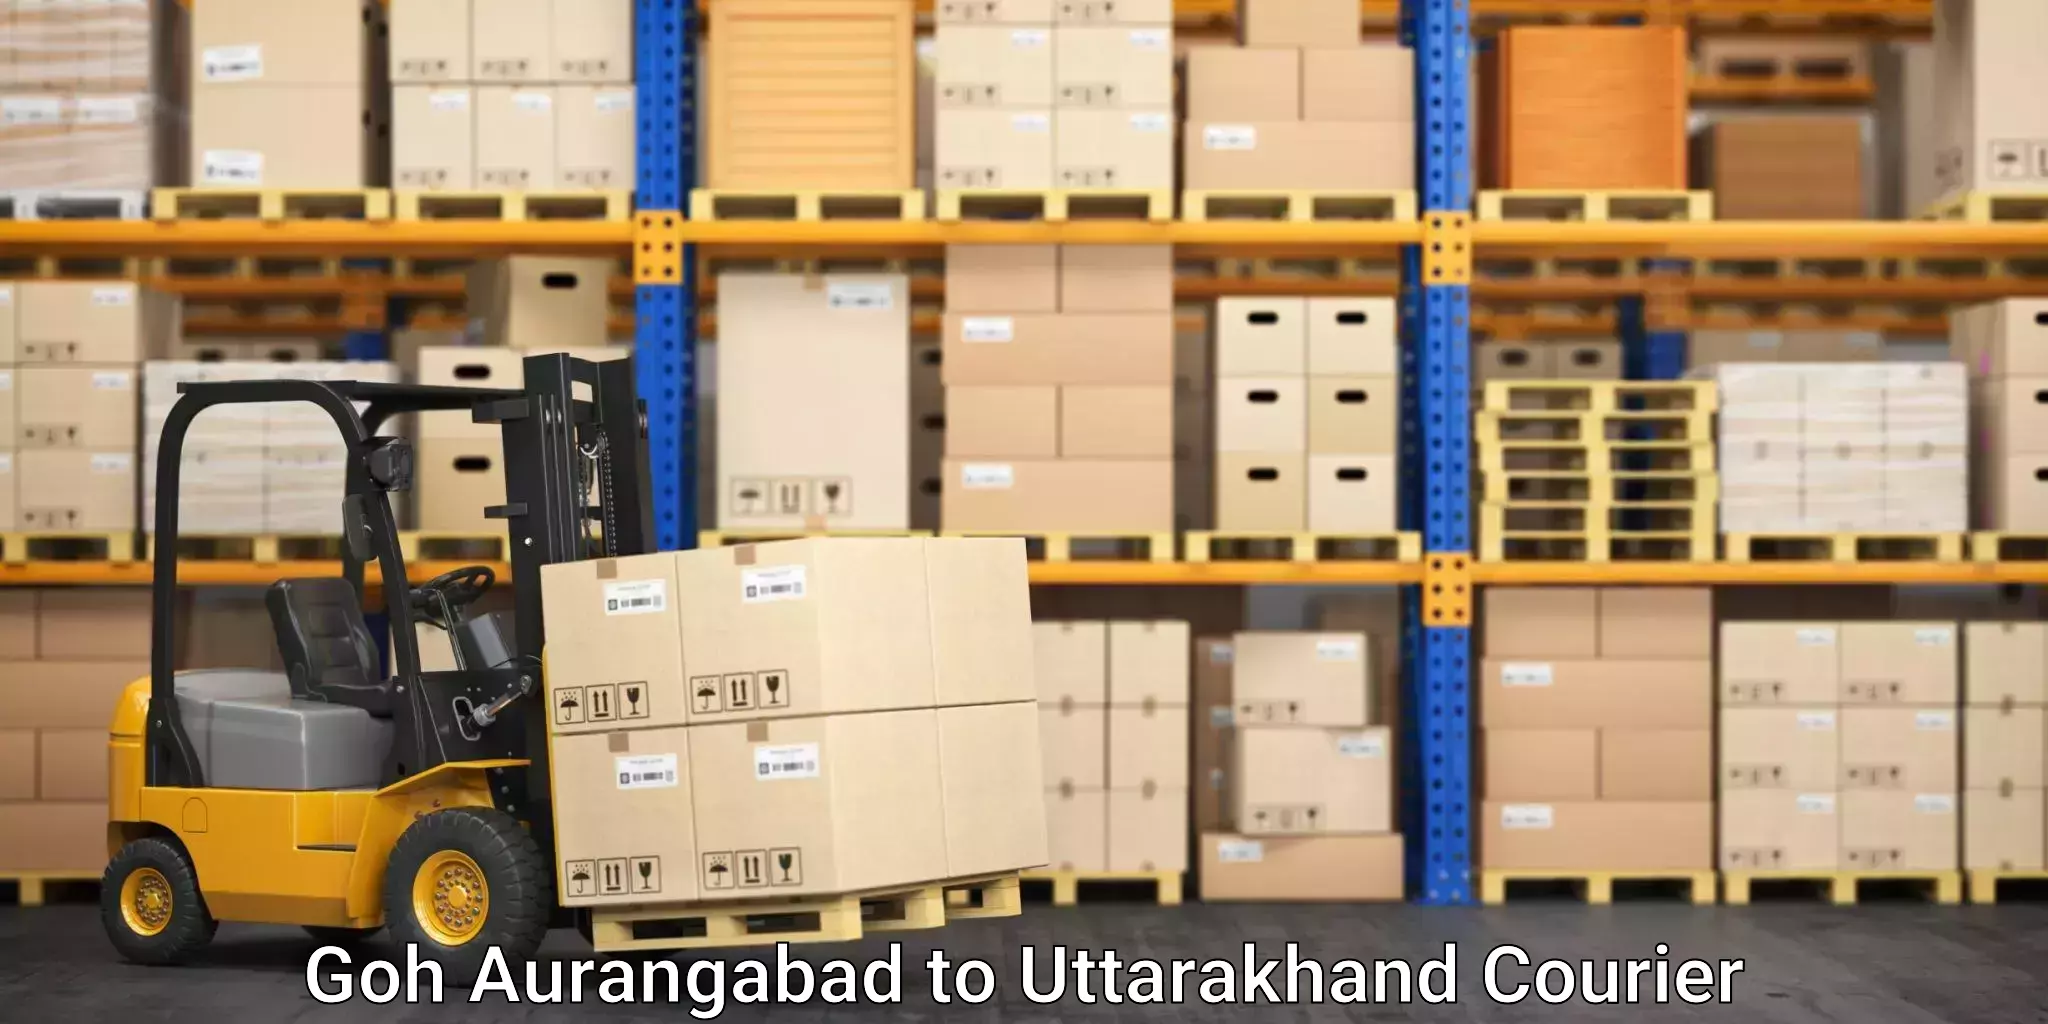 Home moving experts Goh Aurangabad to Uttarakhand